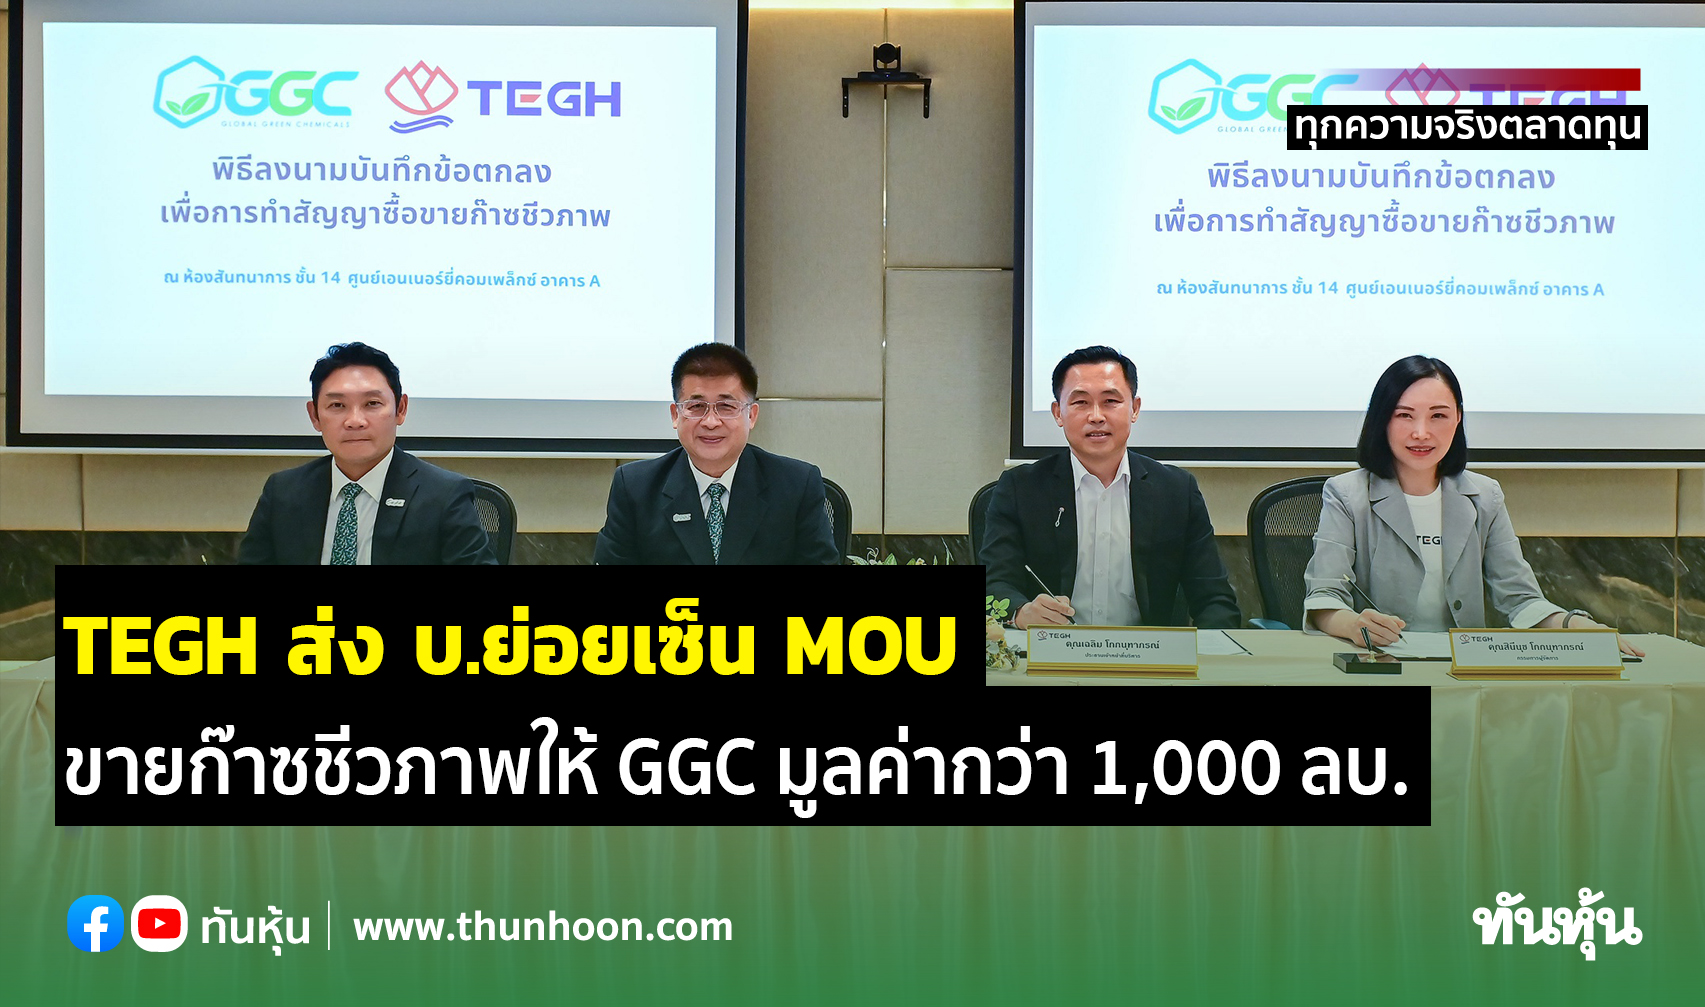 TEGH ส่ง บ.ย่อยเซ็น MOU ขายก๊าซชีวภาพให้ GGC  มูลค่ากว่า 1,000 ลบ.